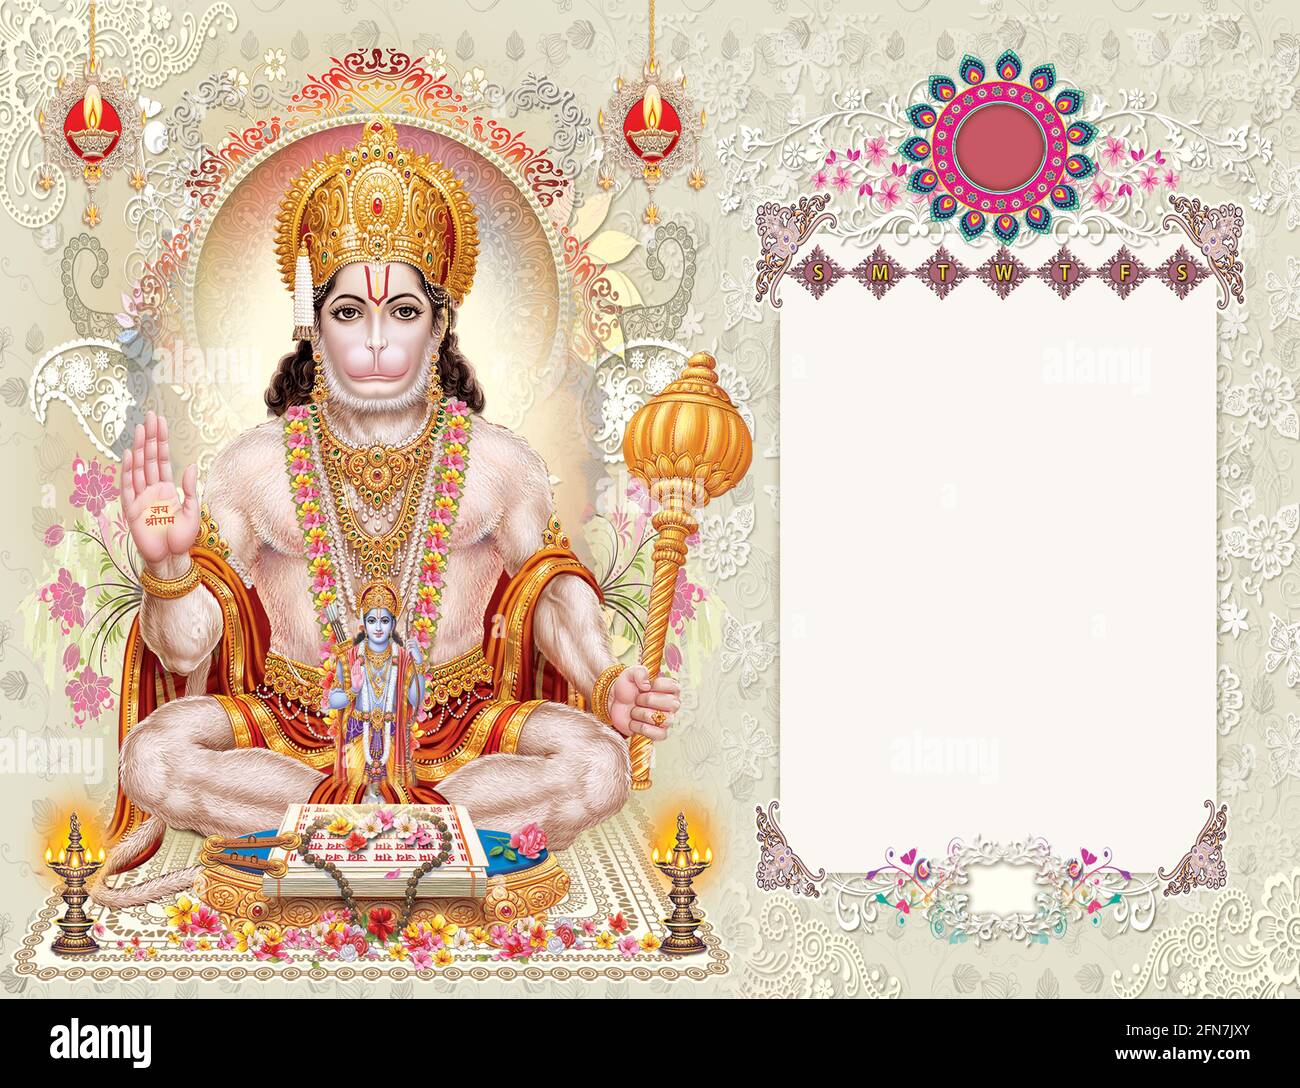 Hochauflösende Stock-Fotografie von Lord Hanuman aus einem Haus kreativer Kunst für die Druckindustrie. Stockfoto